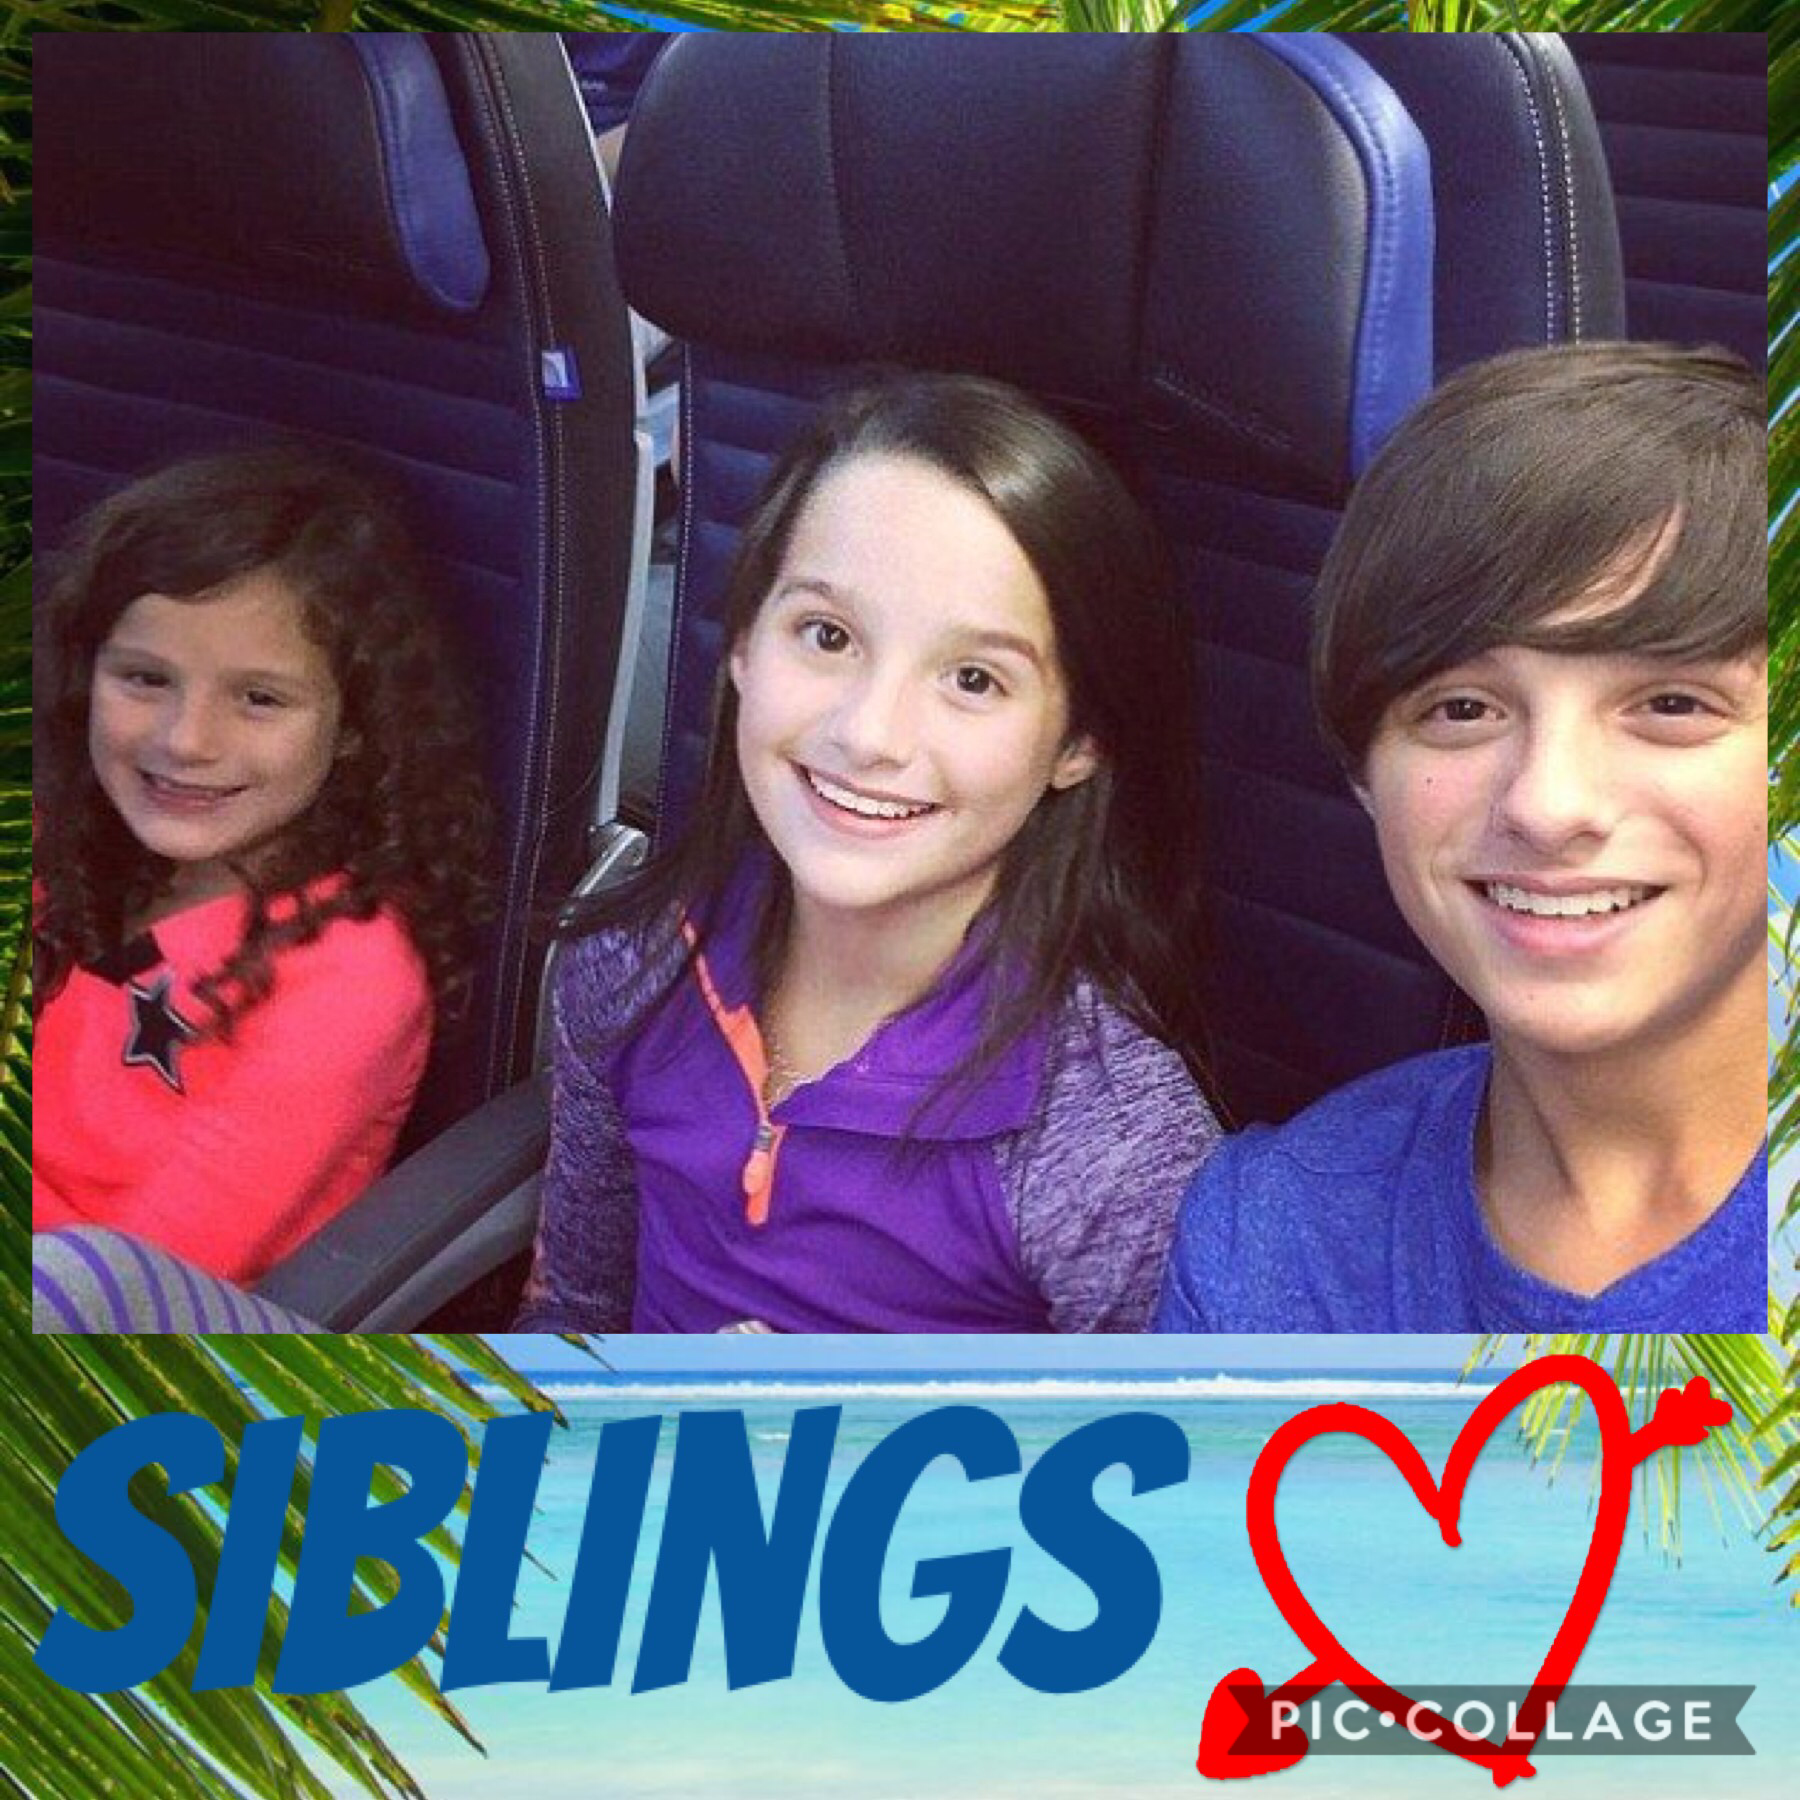 #siblings